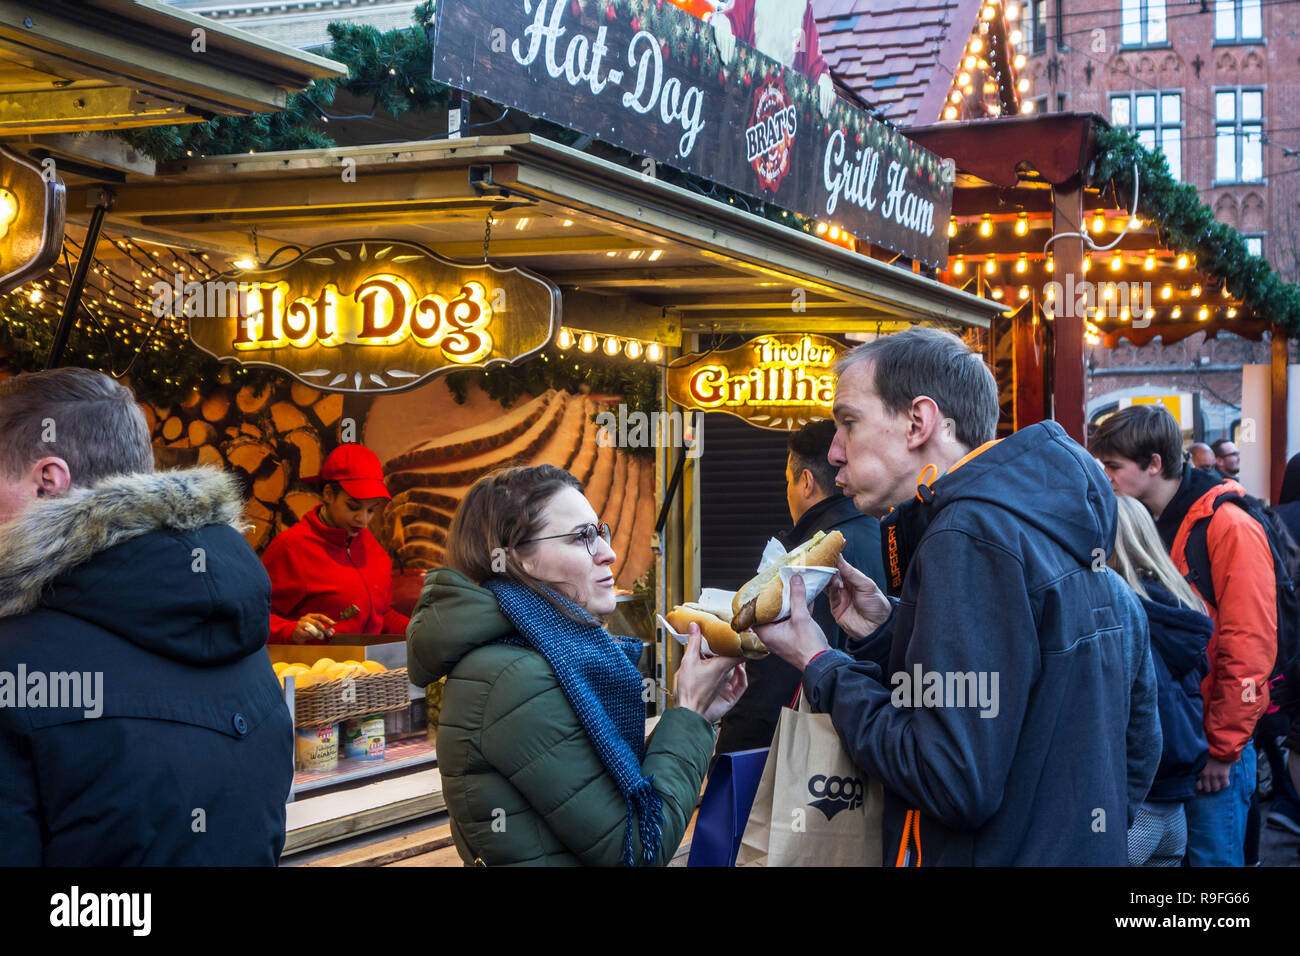 Les visiteurs du stand fast-food eating hot dogs au marché de Noël pendant les fêtes de Noël en hiver Banque D'Images